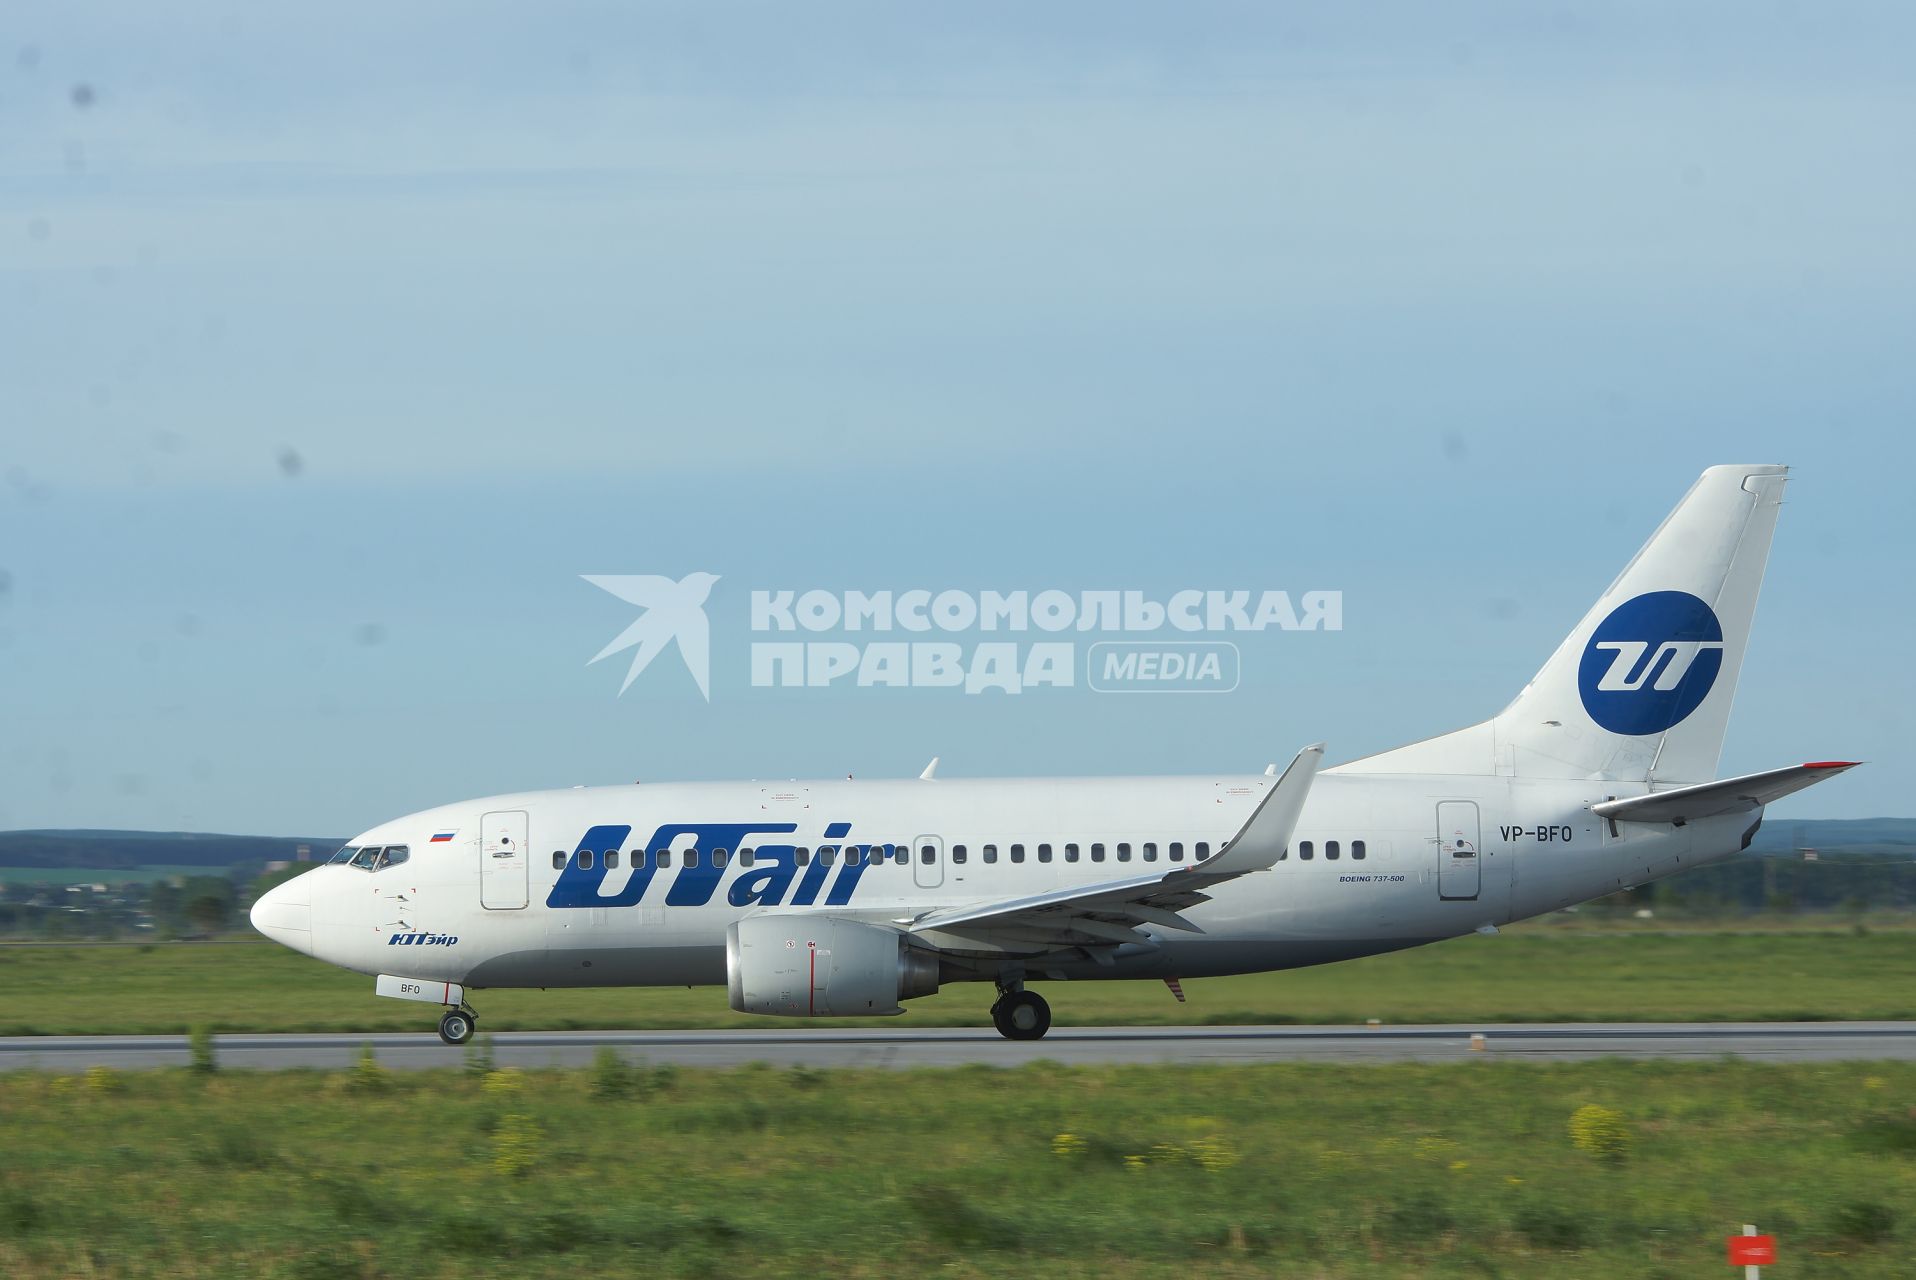 самолет Boeing 737 авиакомпании Utair  на взлетной полосе аэропорта Кольцово в Екатеринбурге